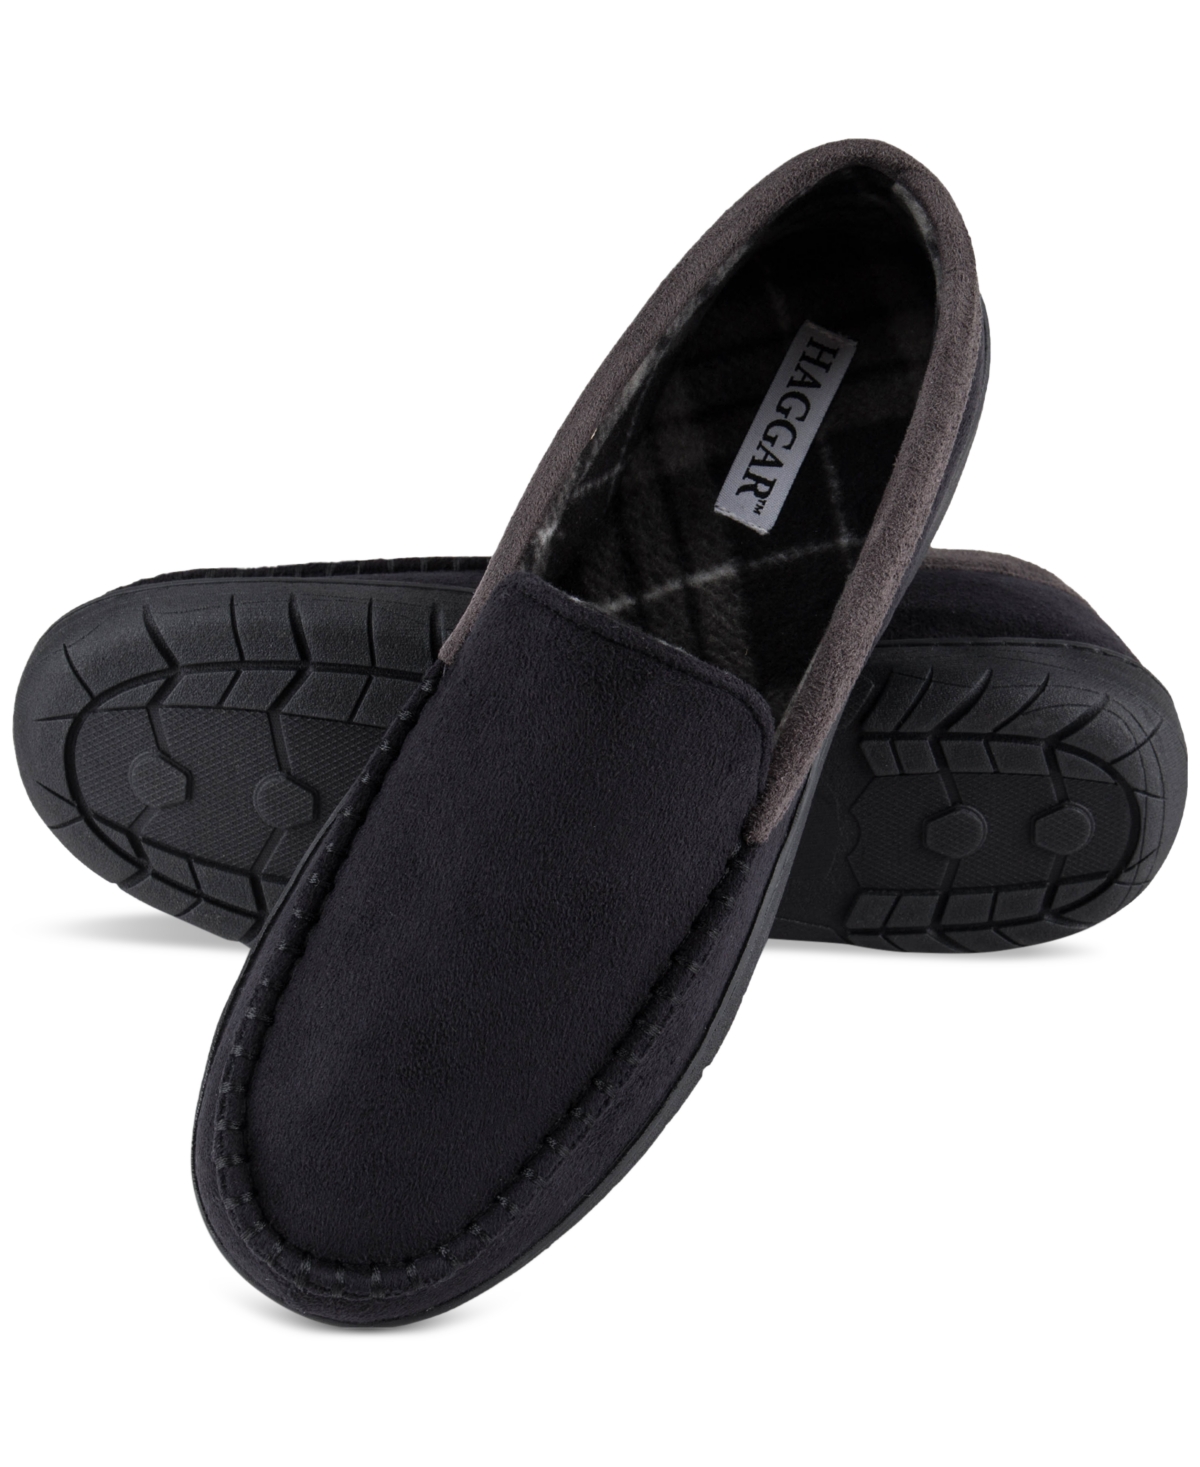 Men's Microsuede Fleece-Lined Venetian Slippers - Black